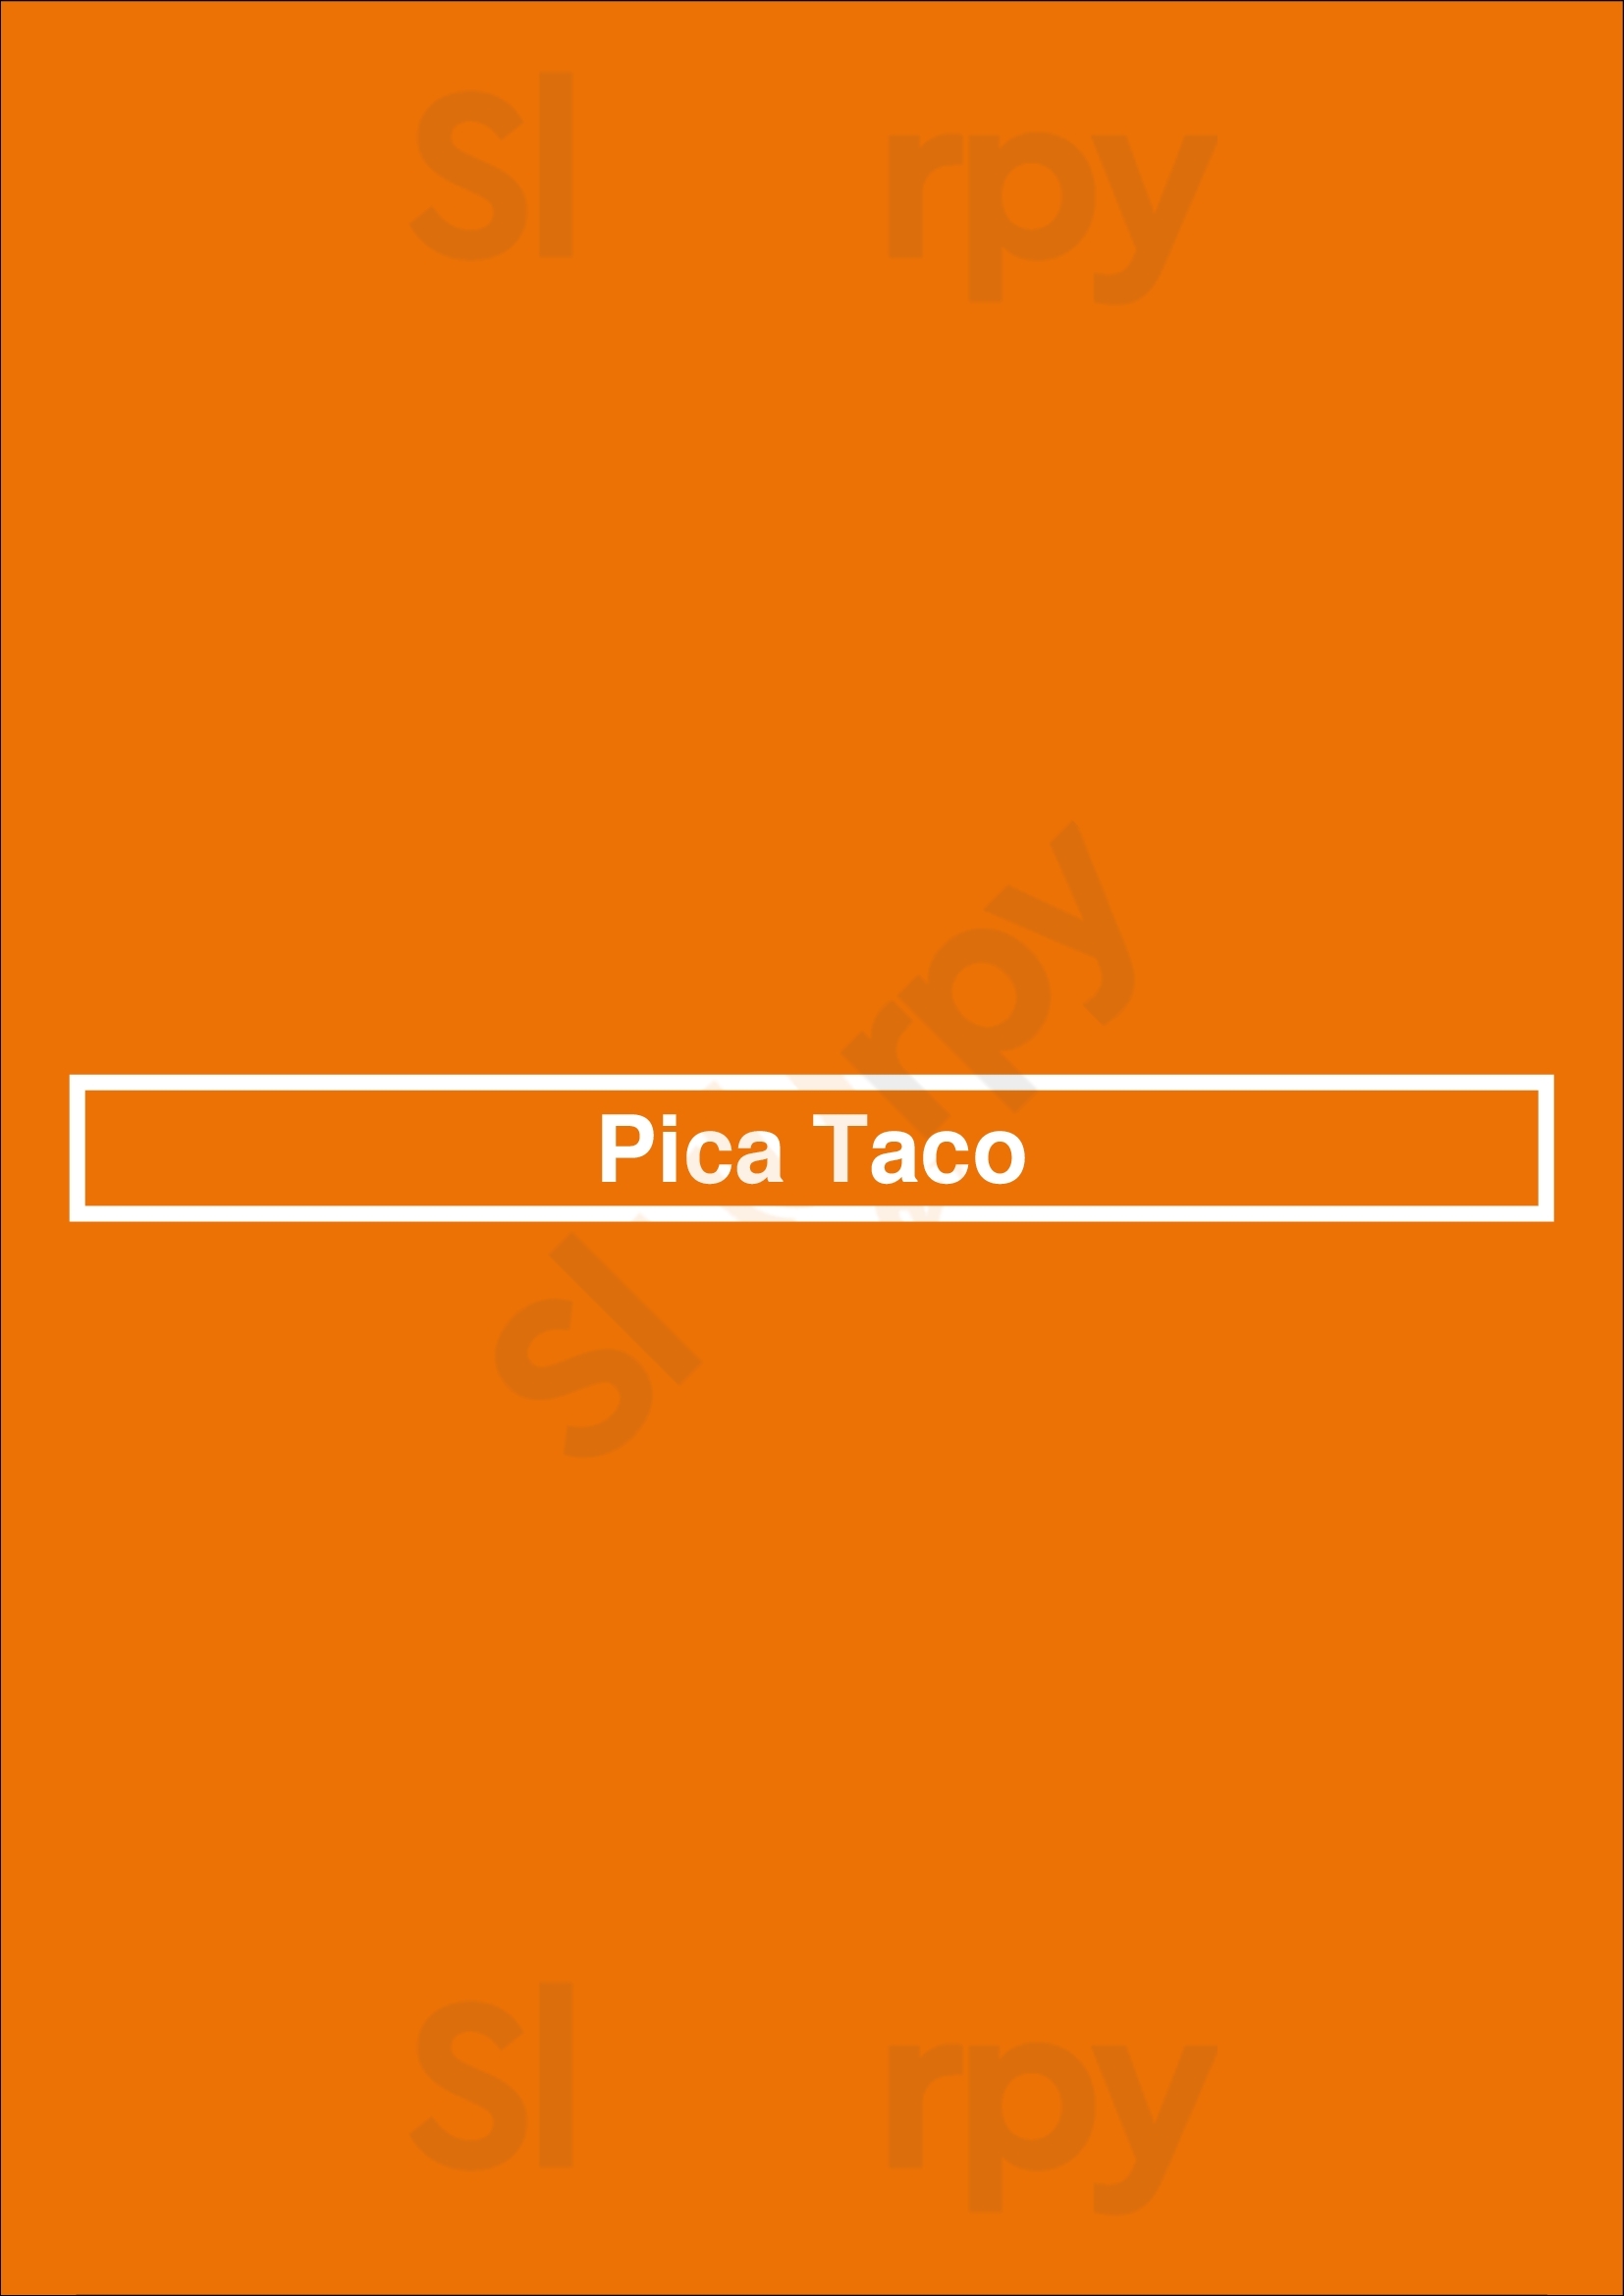 Pica Taco Washington DC Menu - 1